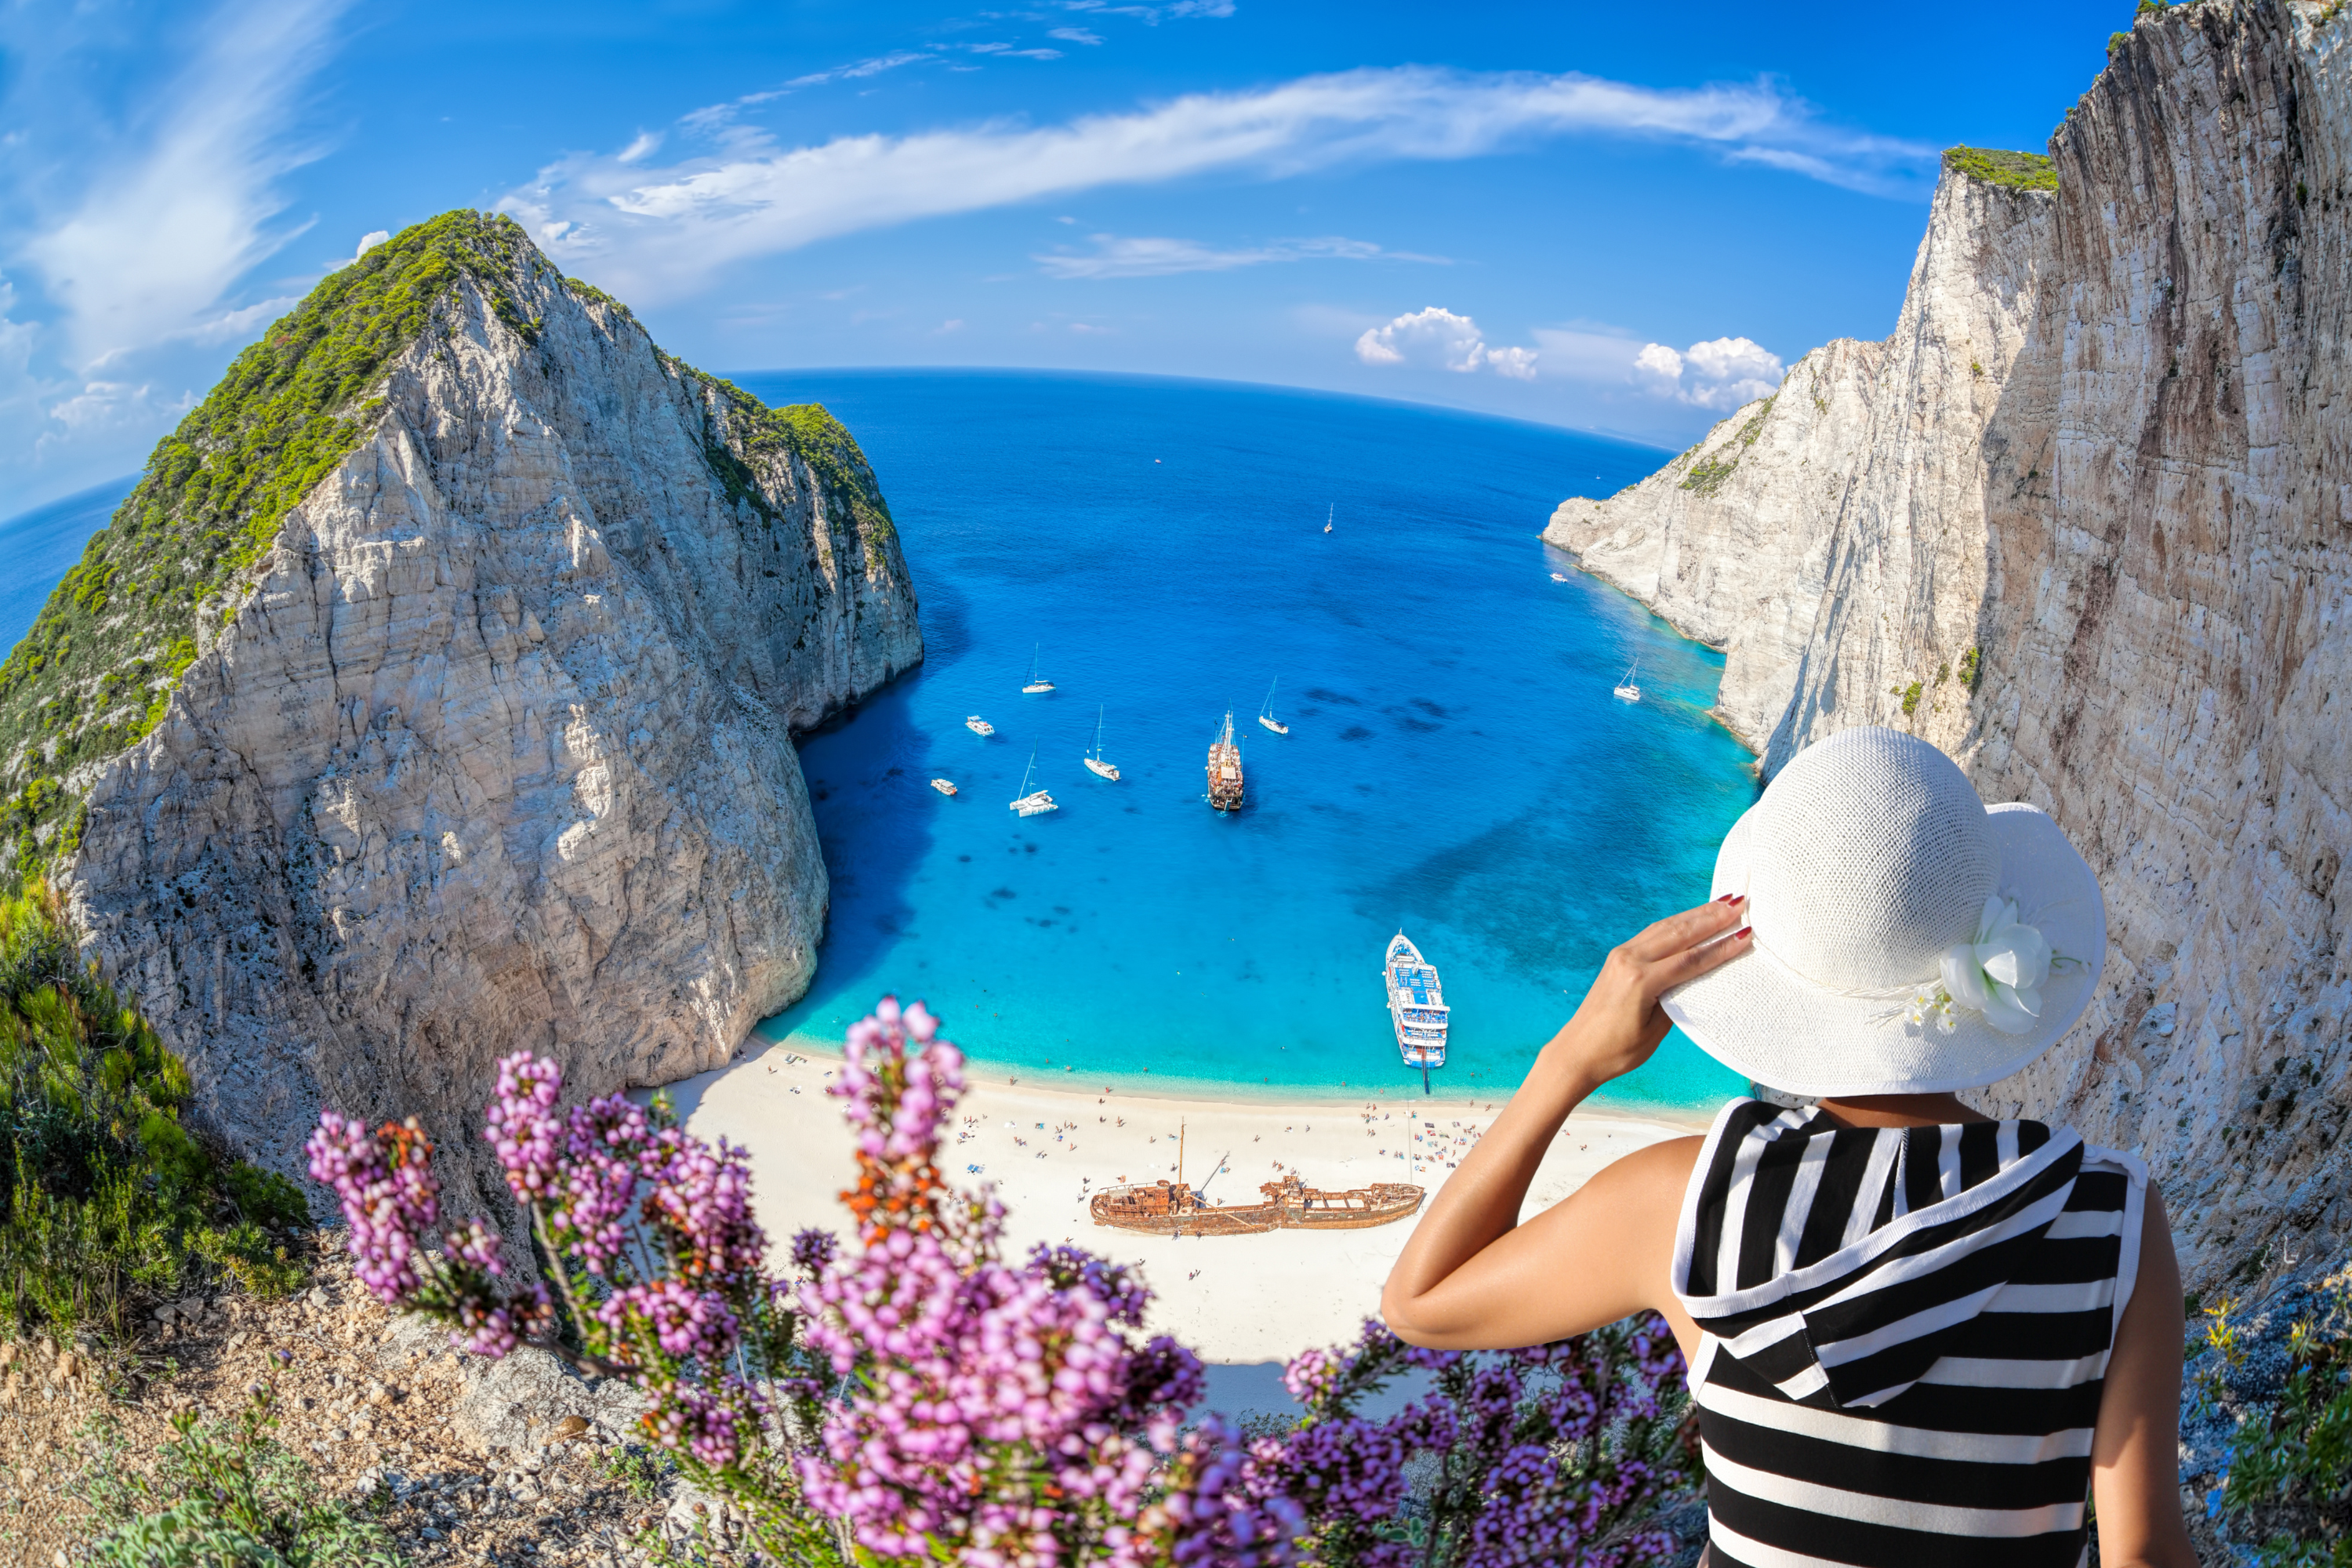 Kréta je turistický ostrov, ale nabízí jedny z nejkrásnějších řeckých pláží